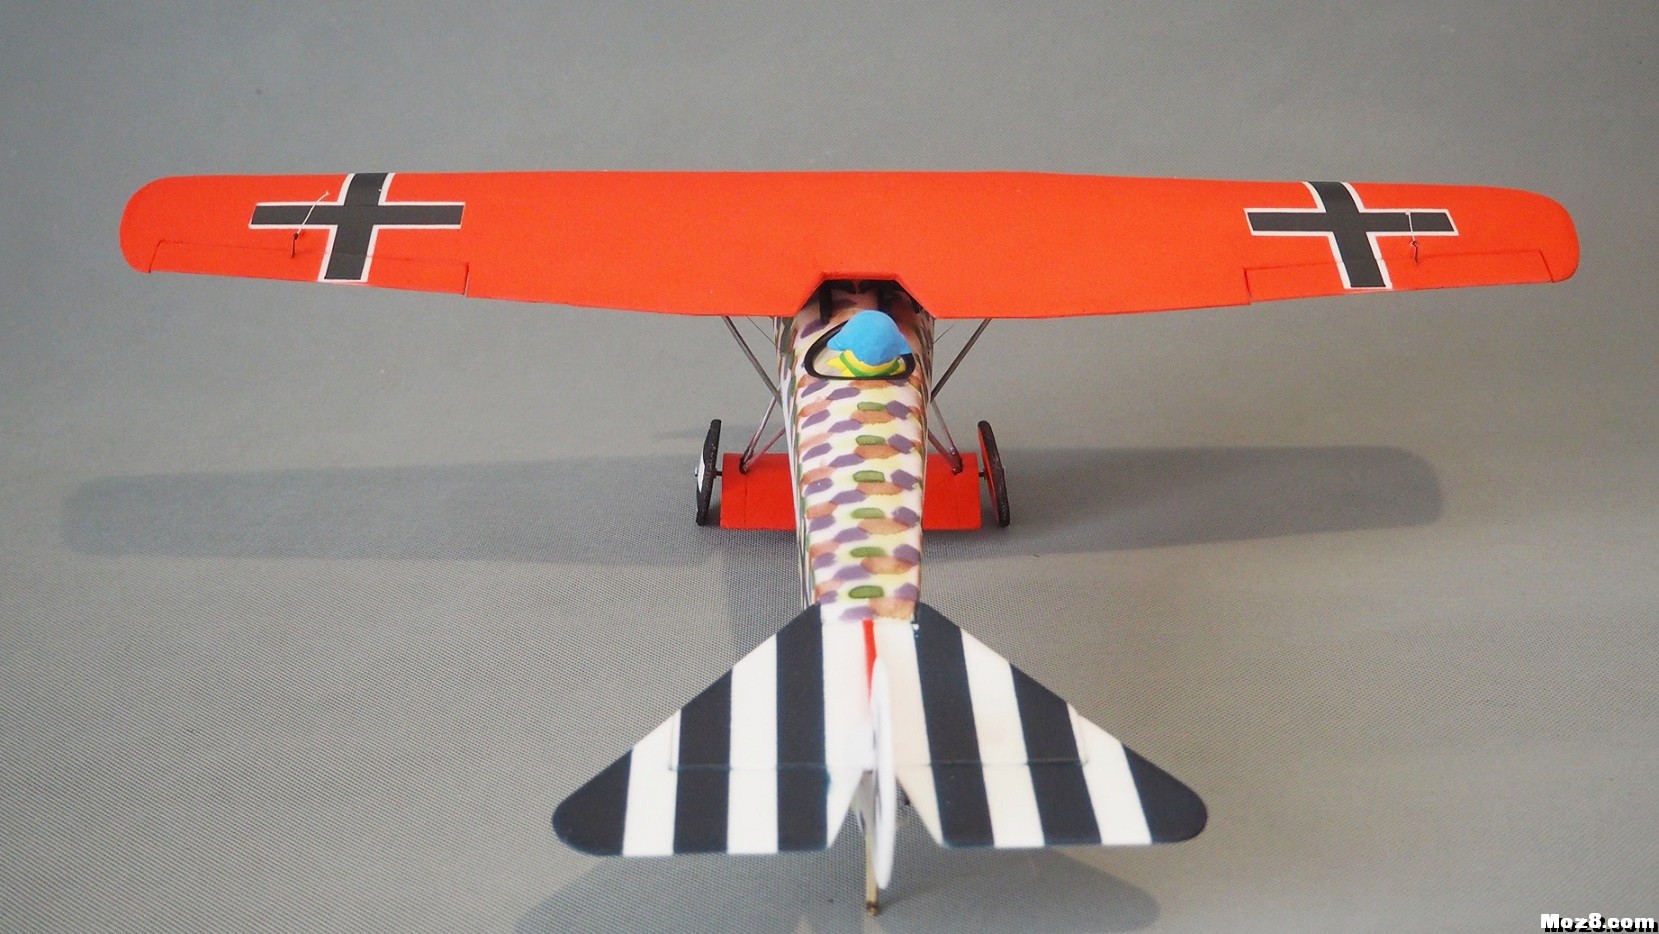 【爱因制造】迷你Fokker D-VIII战机 舵机,接收机,空心杯,bilibili,视频 作者:xbnlkdbxl 506 